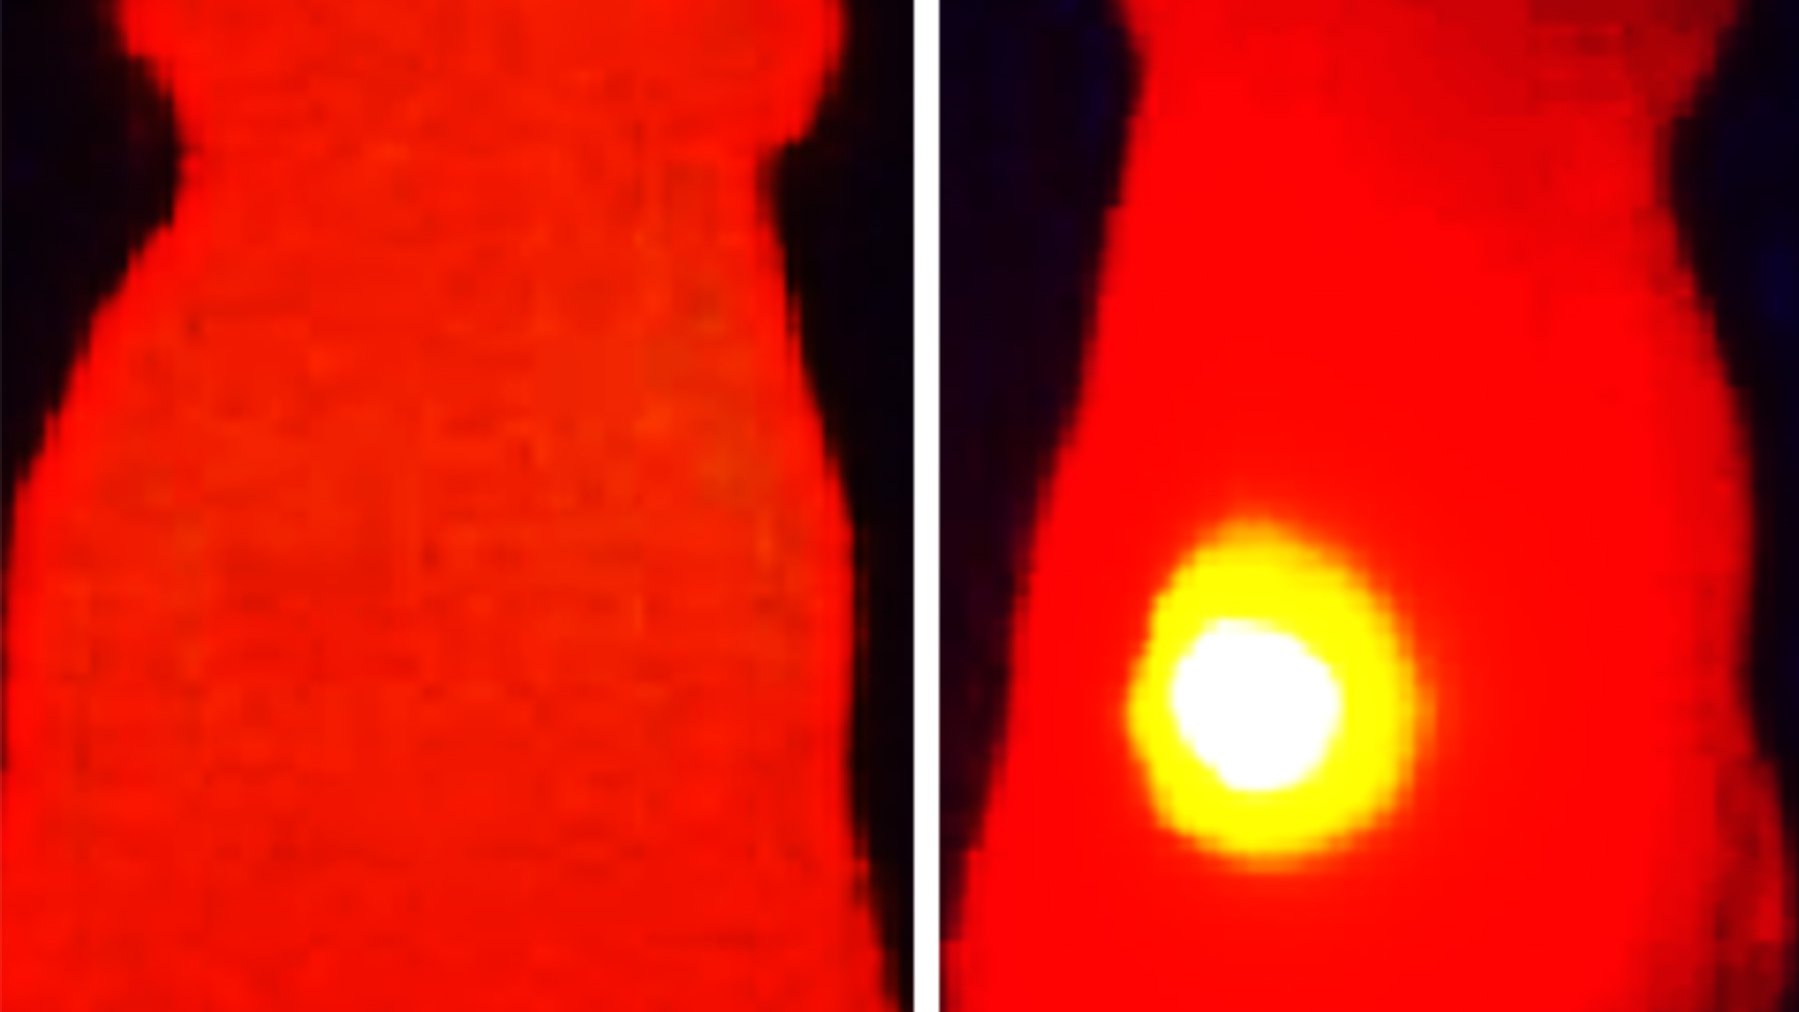 Das Infrarot-Wärmebild auf der rechten Seite zeigt eine Maus, die mit OMVs mit Melanin behandelt wurde. Der Tumor (gelb) zeigt eine Temperaturerhöhung nach der Laserbestrahlung. Auf der linken Seite wurde die Maus mit OMVs ohne Melanin behandelt. 